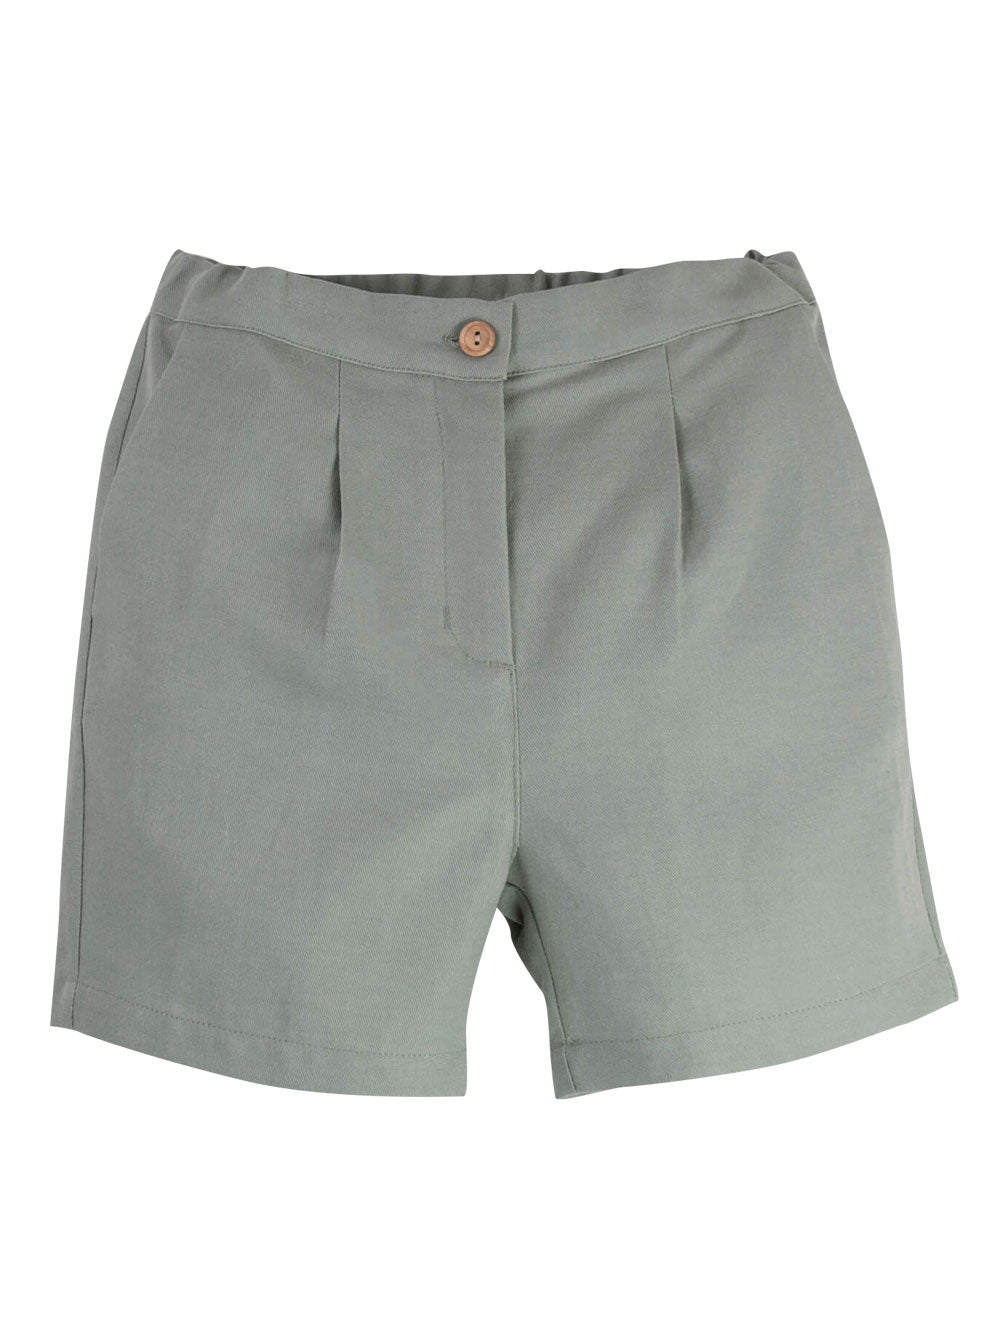 PREORDER: Green Chino Shorts